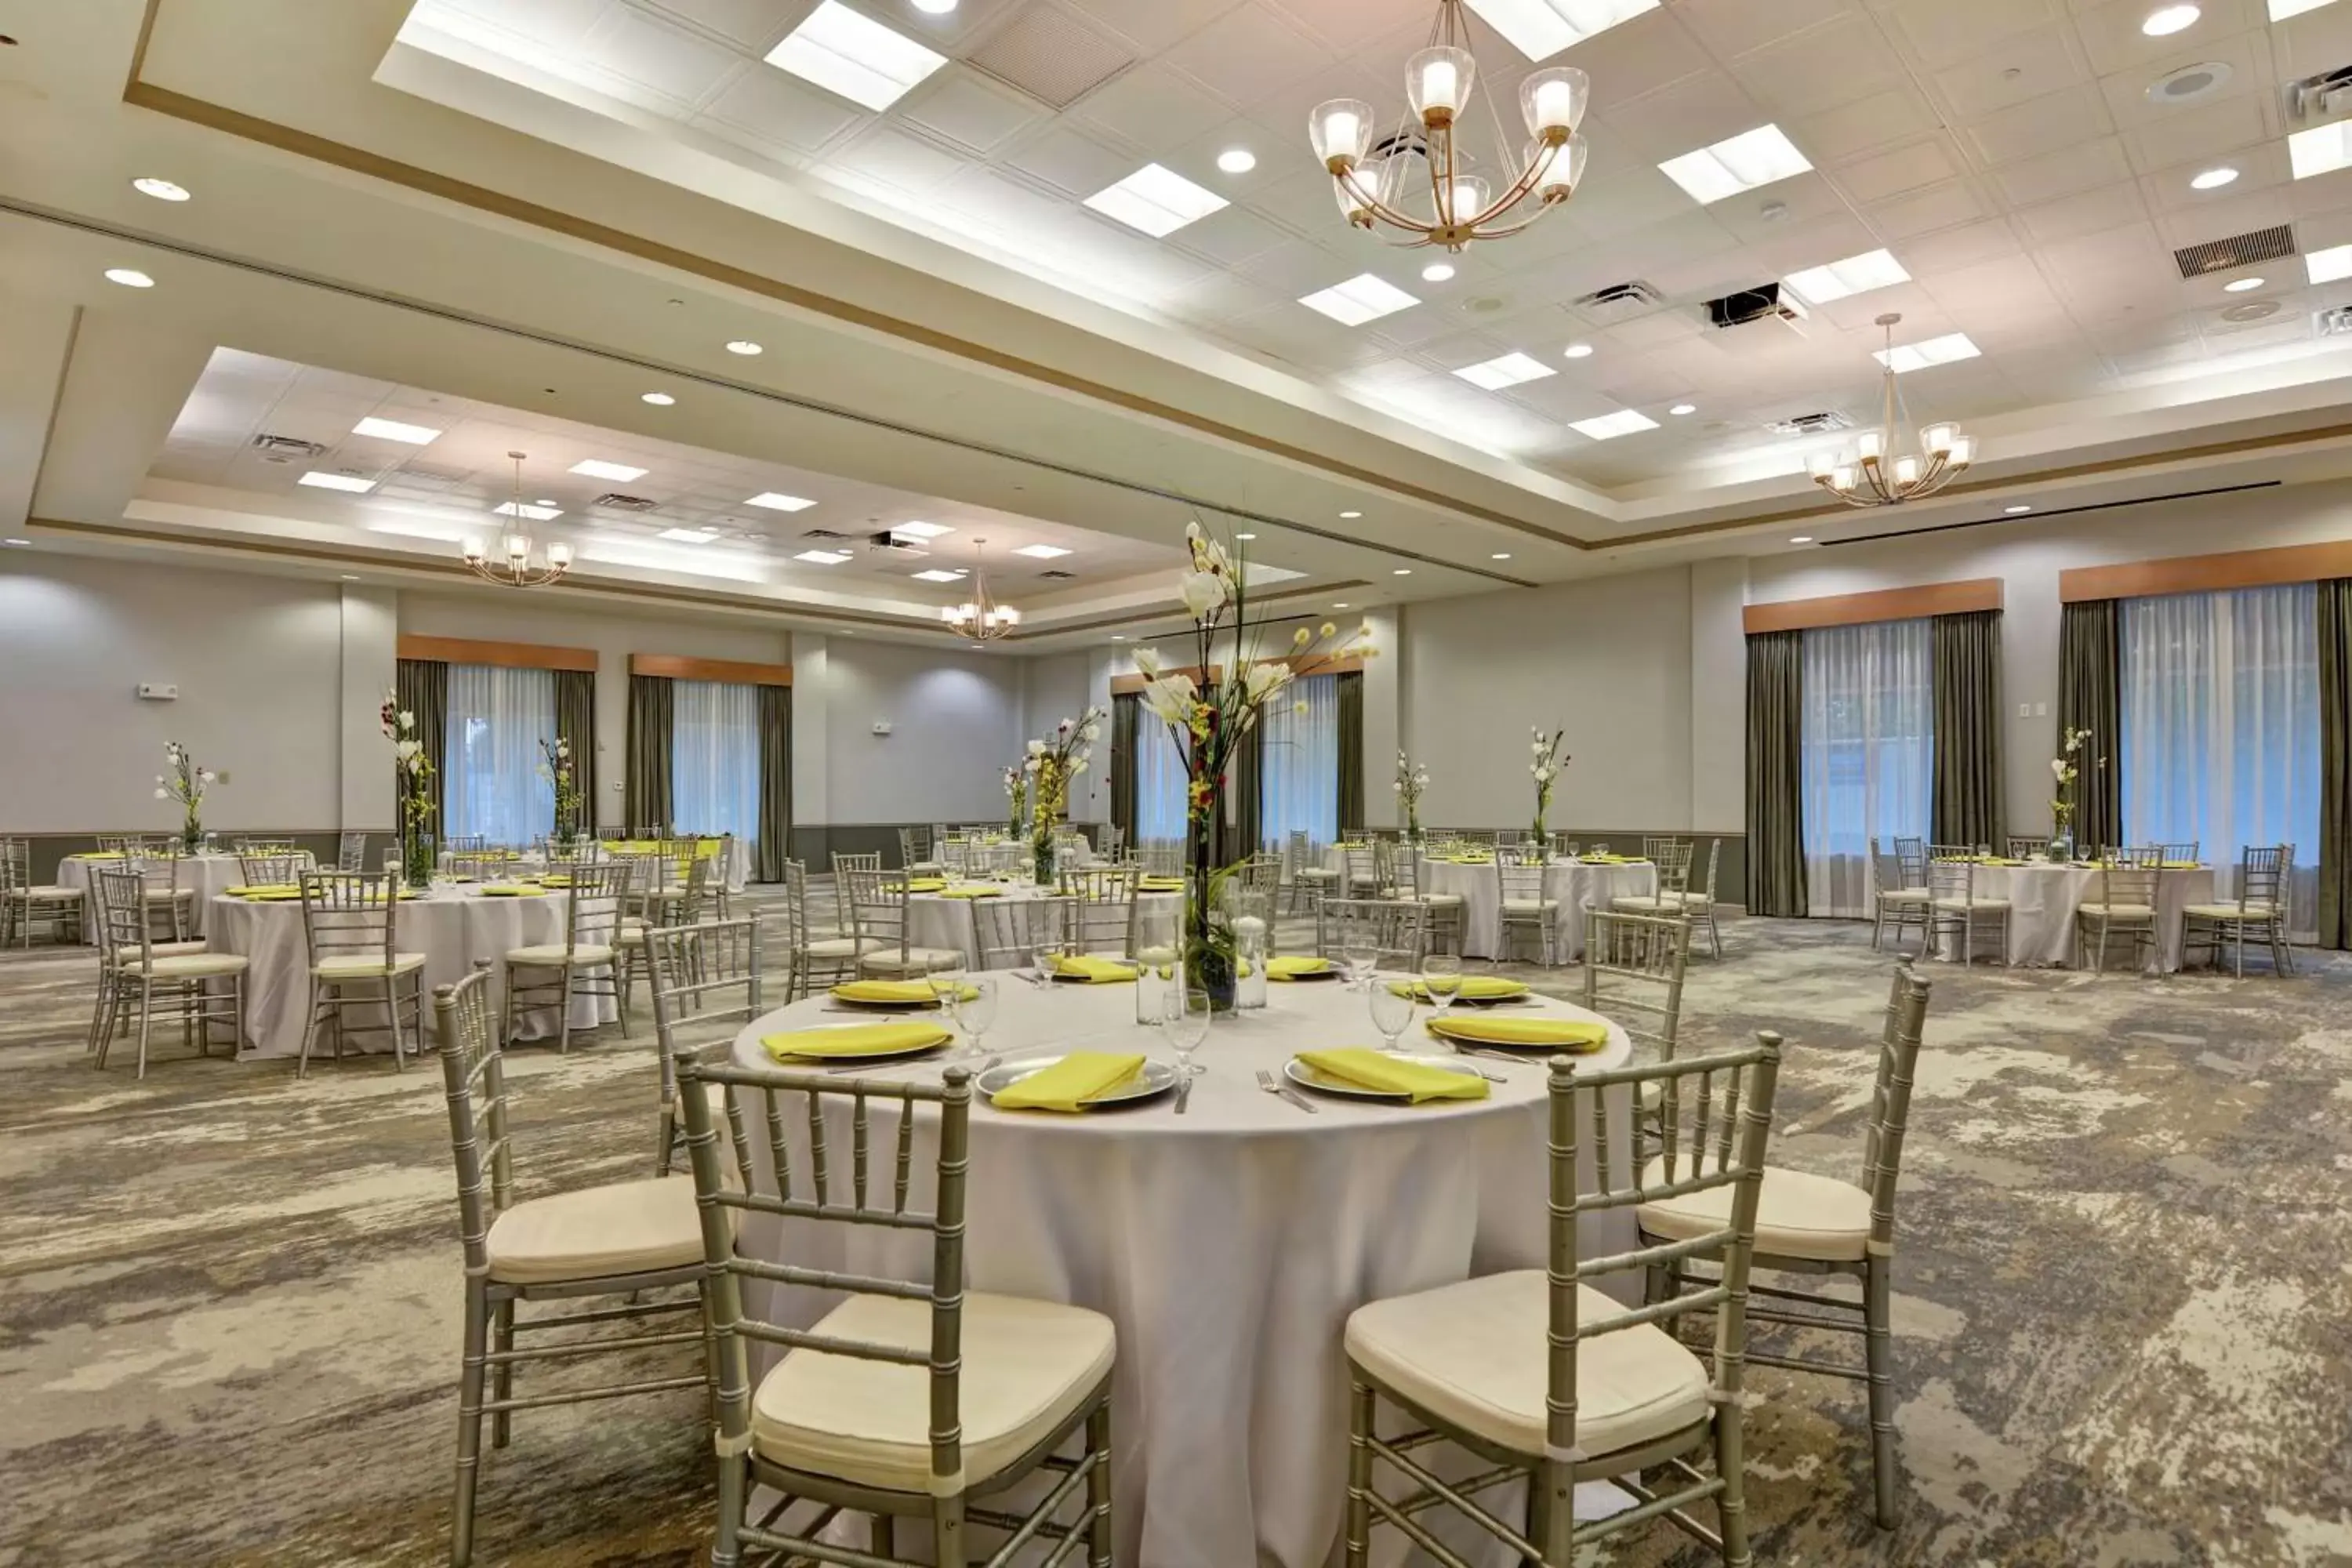 Meeting/conference room, Banquet Facilities in Hilton Garden Inn Orlando Lake Buena Vista